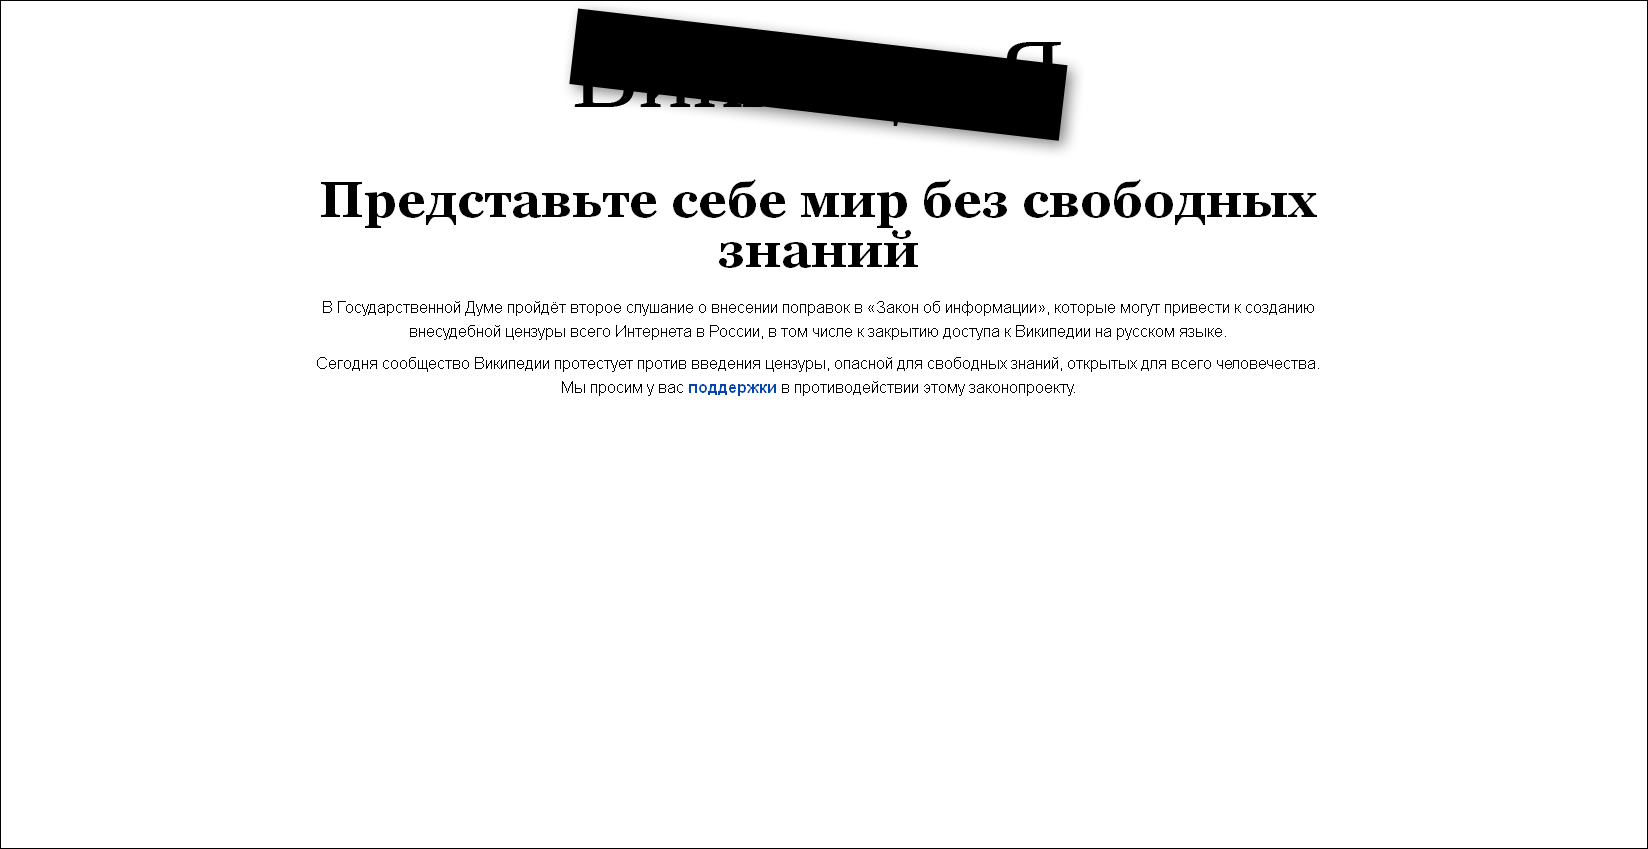 La wikipedia en ruso contra la censura en Rusia